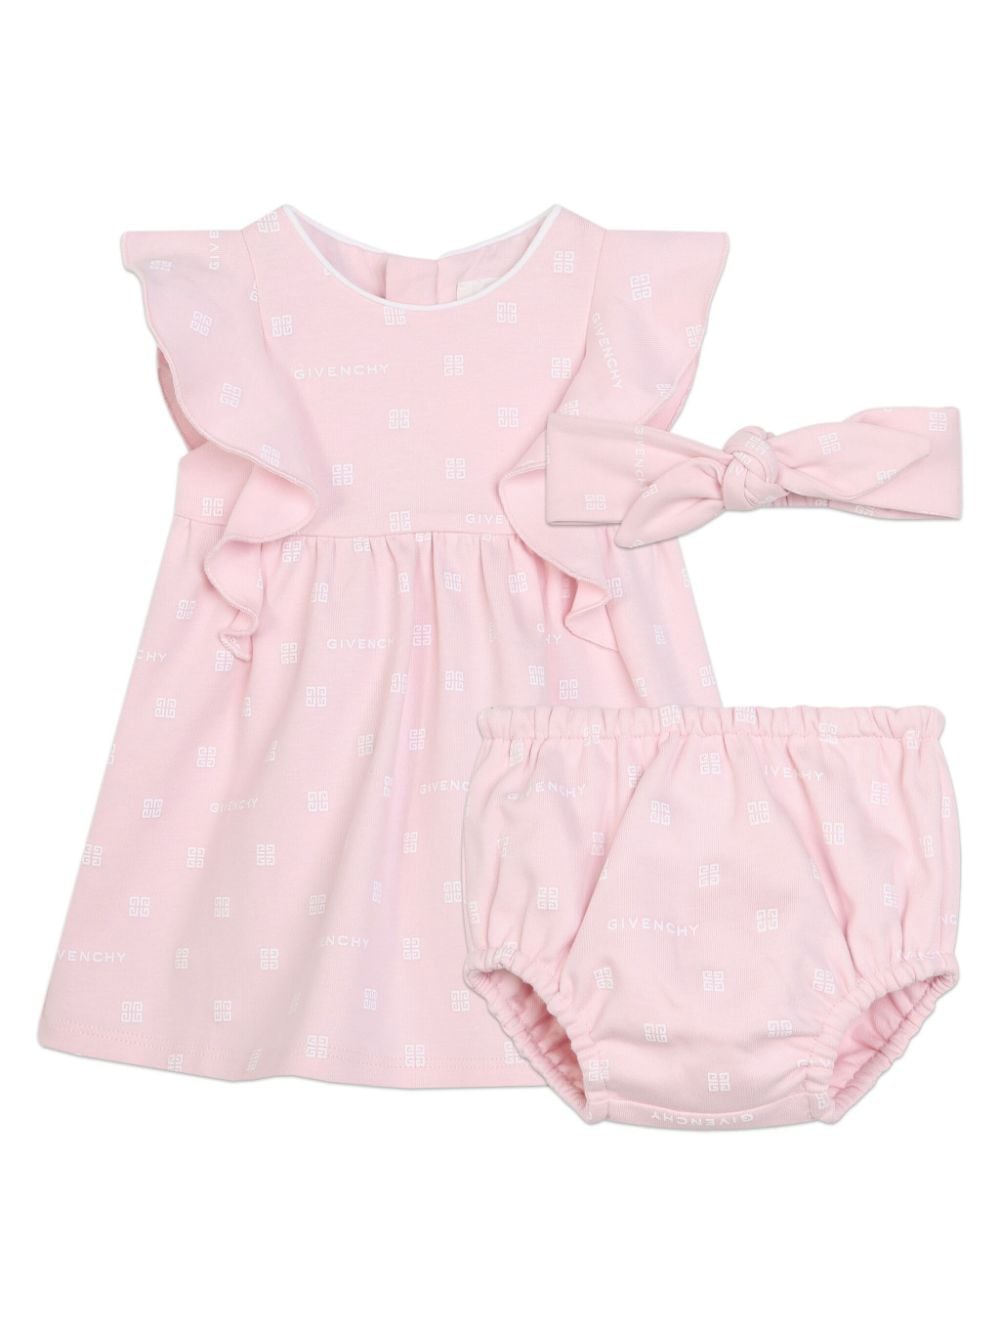 Pagliaccetto rosa per neonata con logo